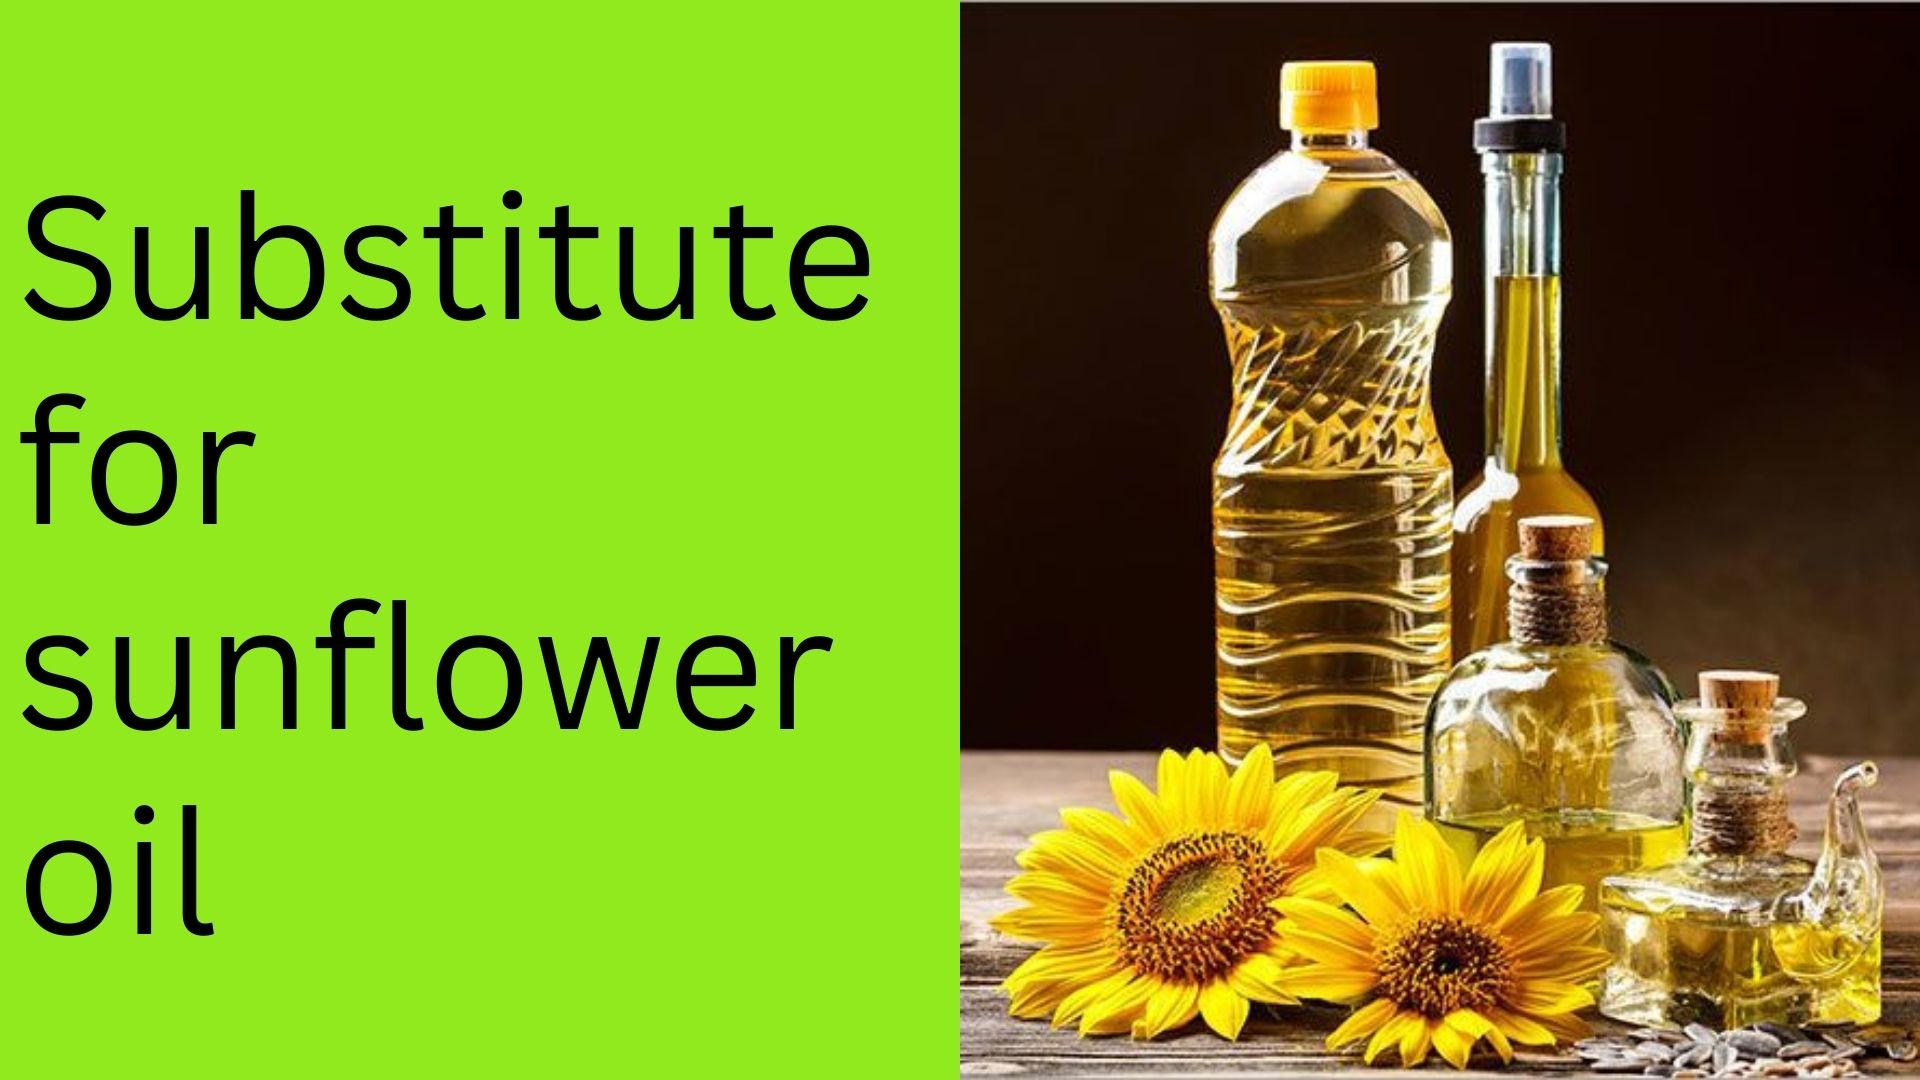 Substitute for sunflower oil